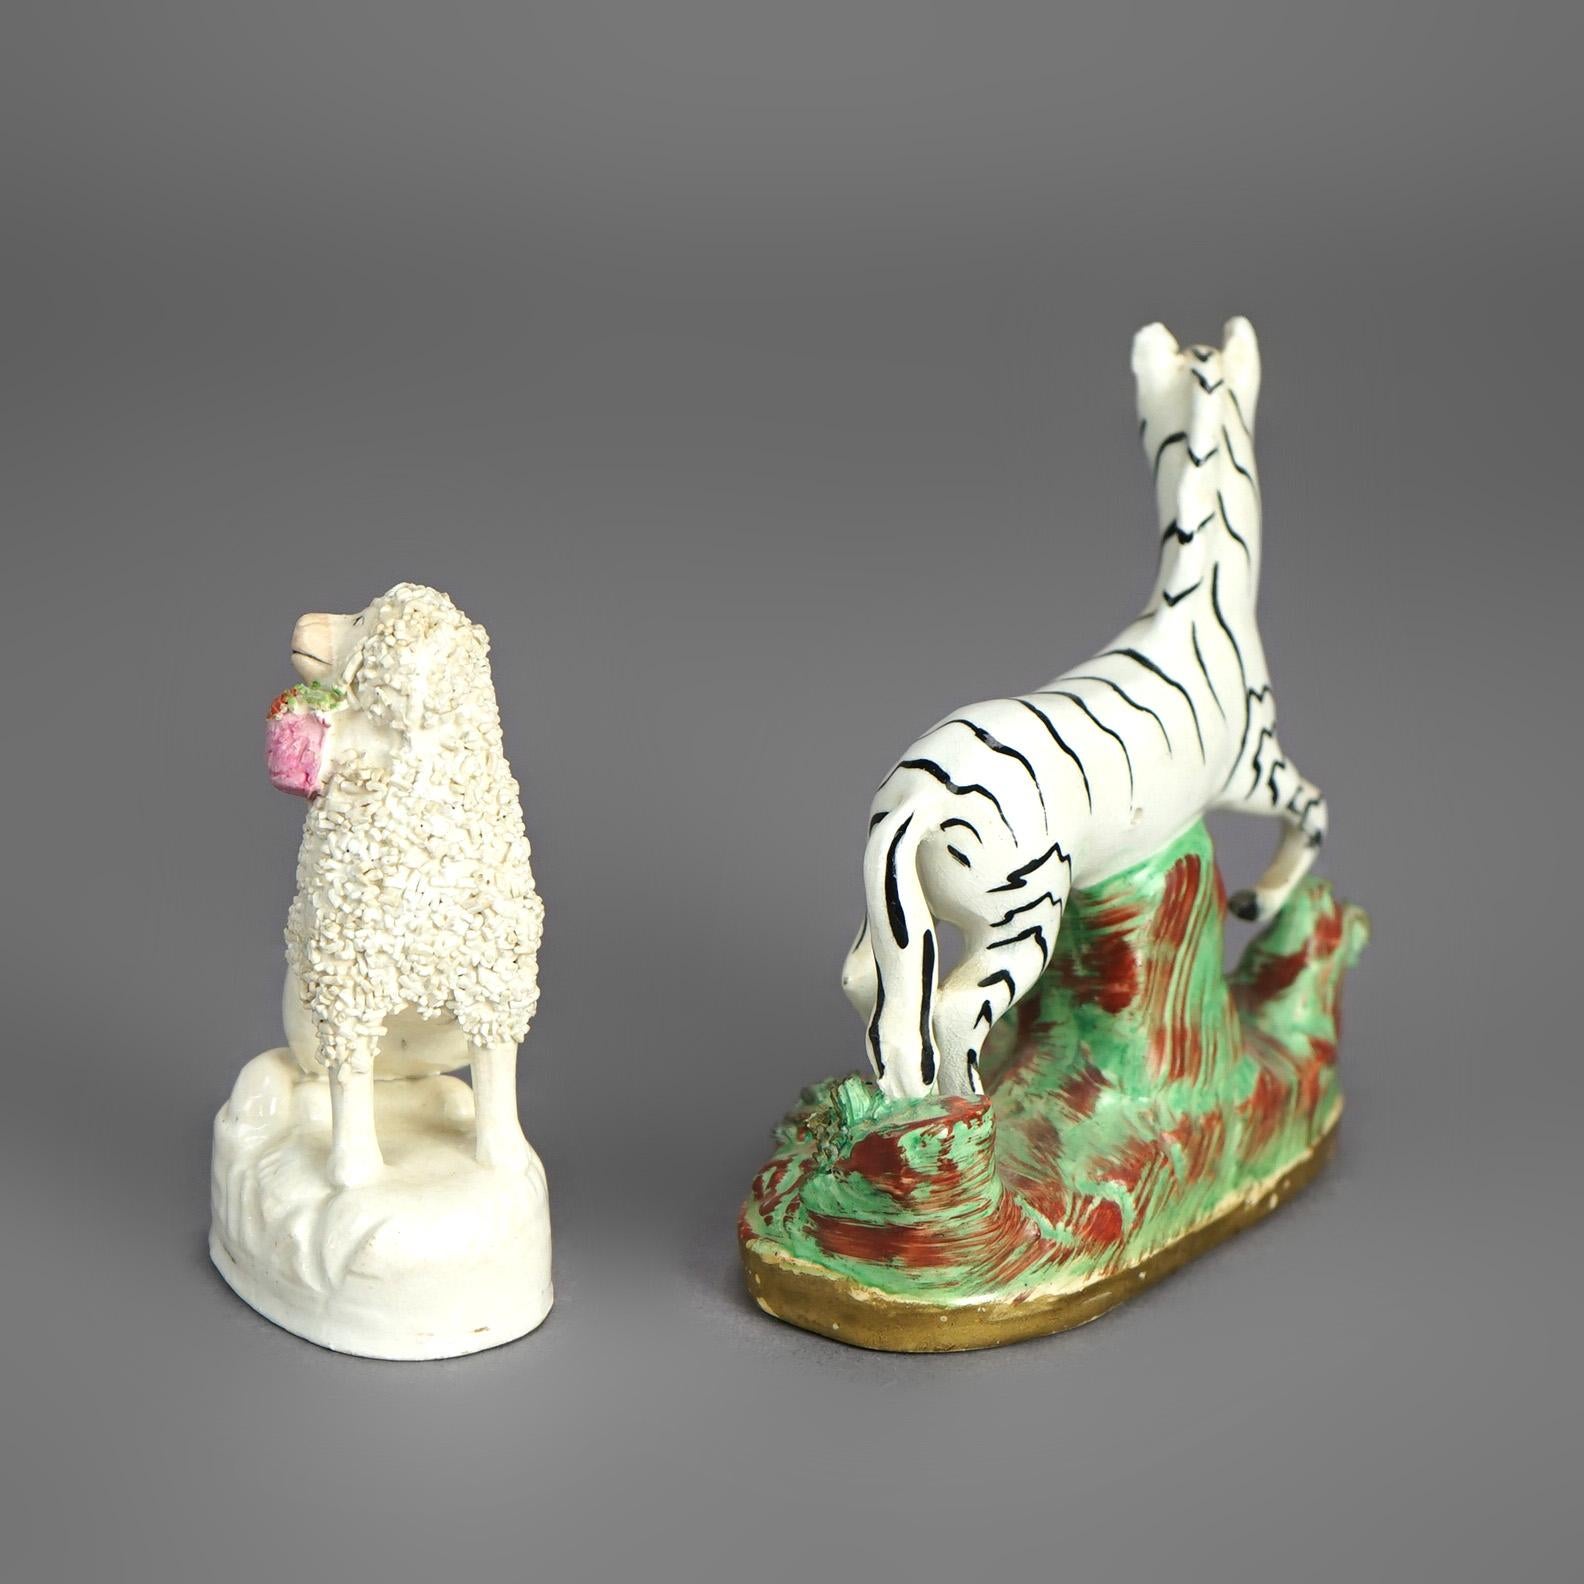 19th Century Antique Staffordshire Polychromed Porcelain Zebra & Poodle Dog Figures C1870 For Sale